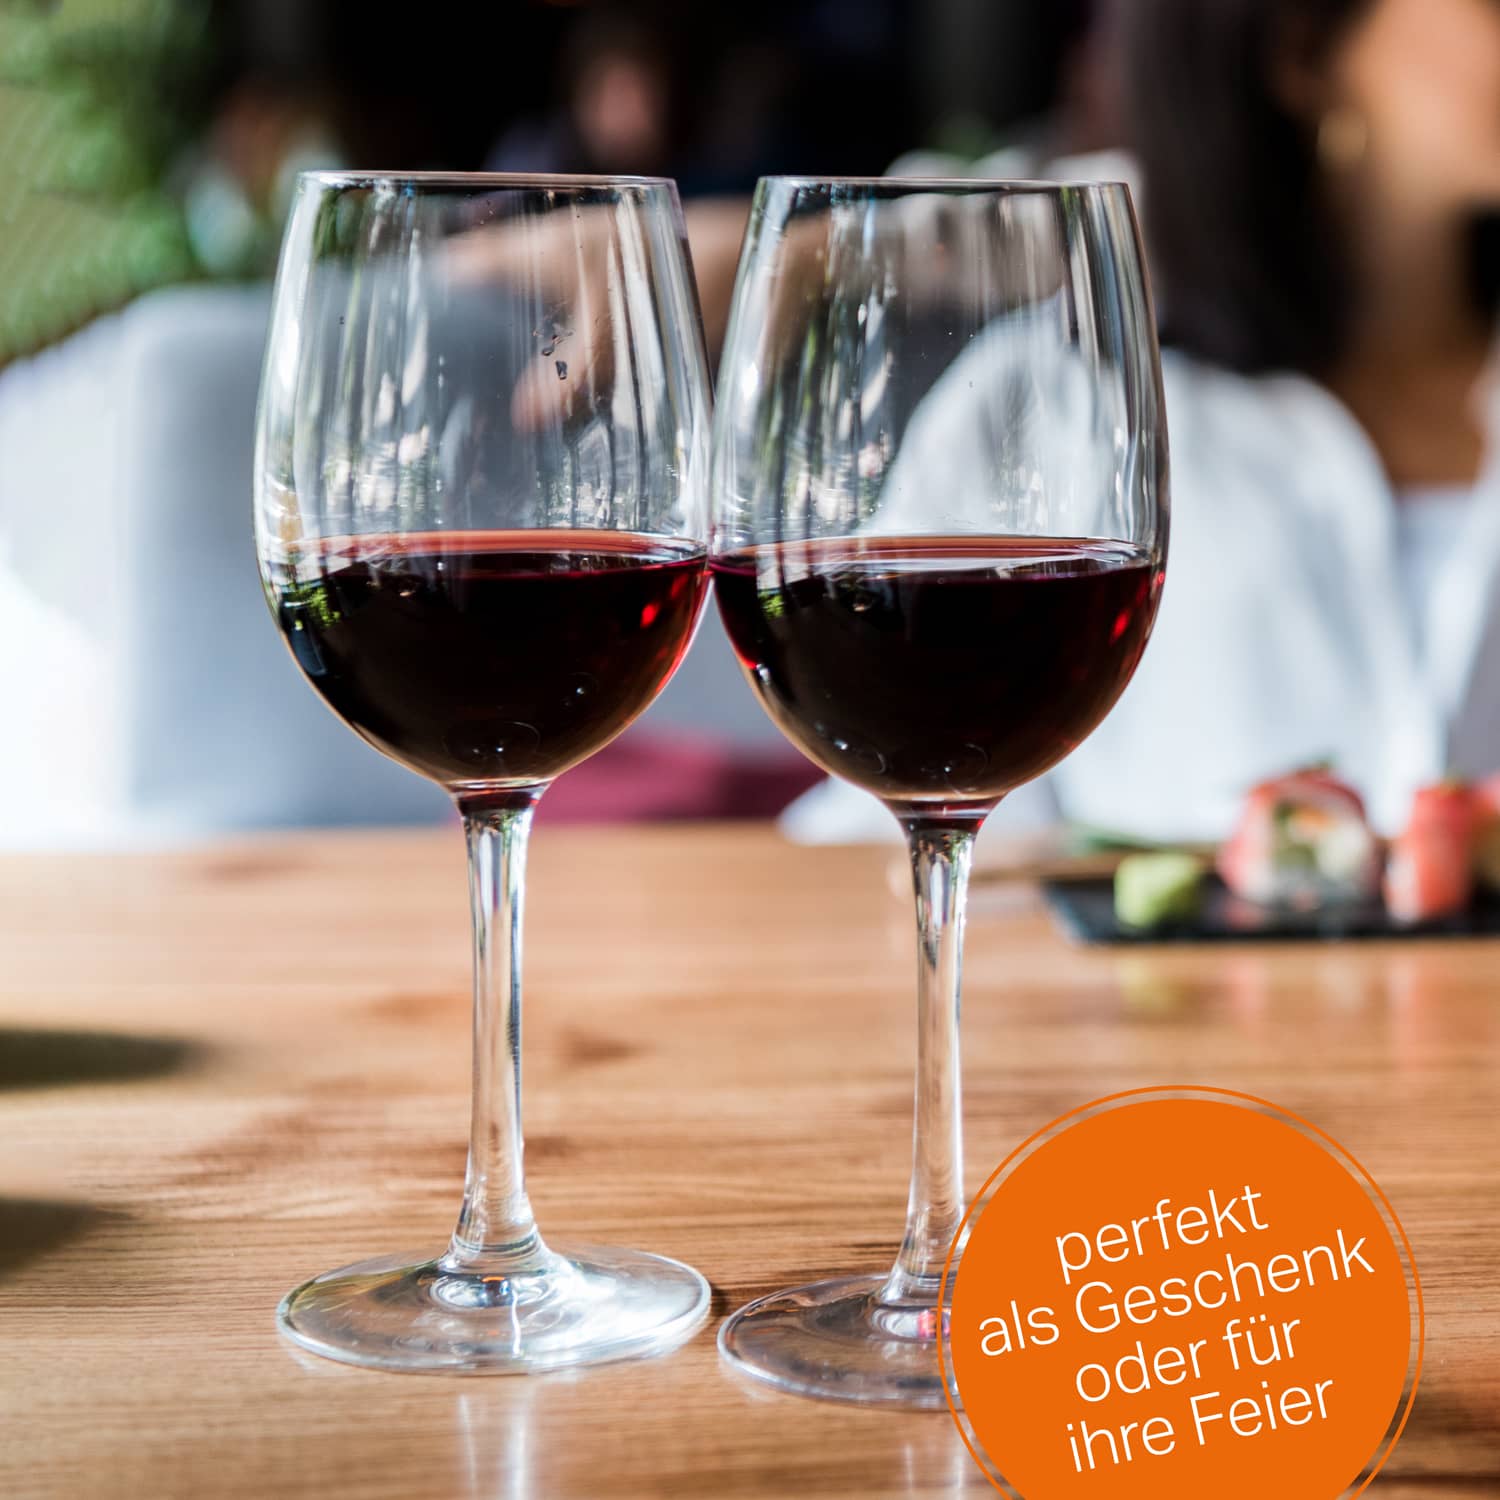 2x Leonardo Rotweinglas mit Namen oder Wunschtext graviert, 460ml, DAILY, personalisiertes Premium Rotweinglas in Gastroqualität (Weinrebe)